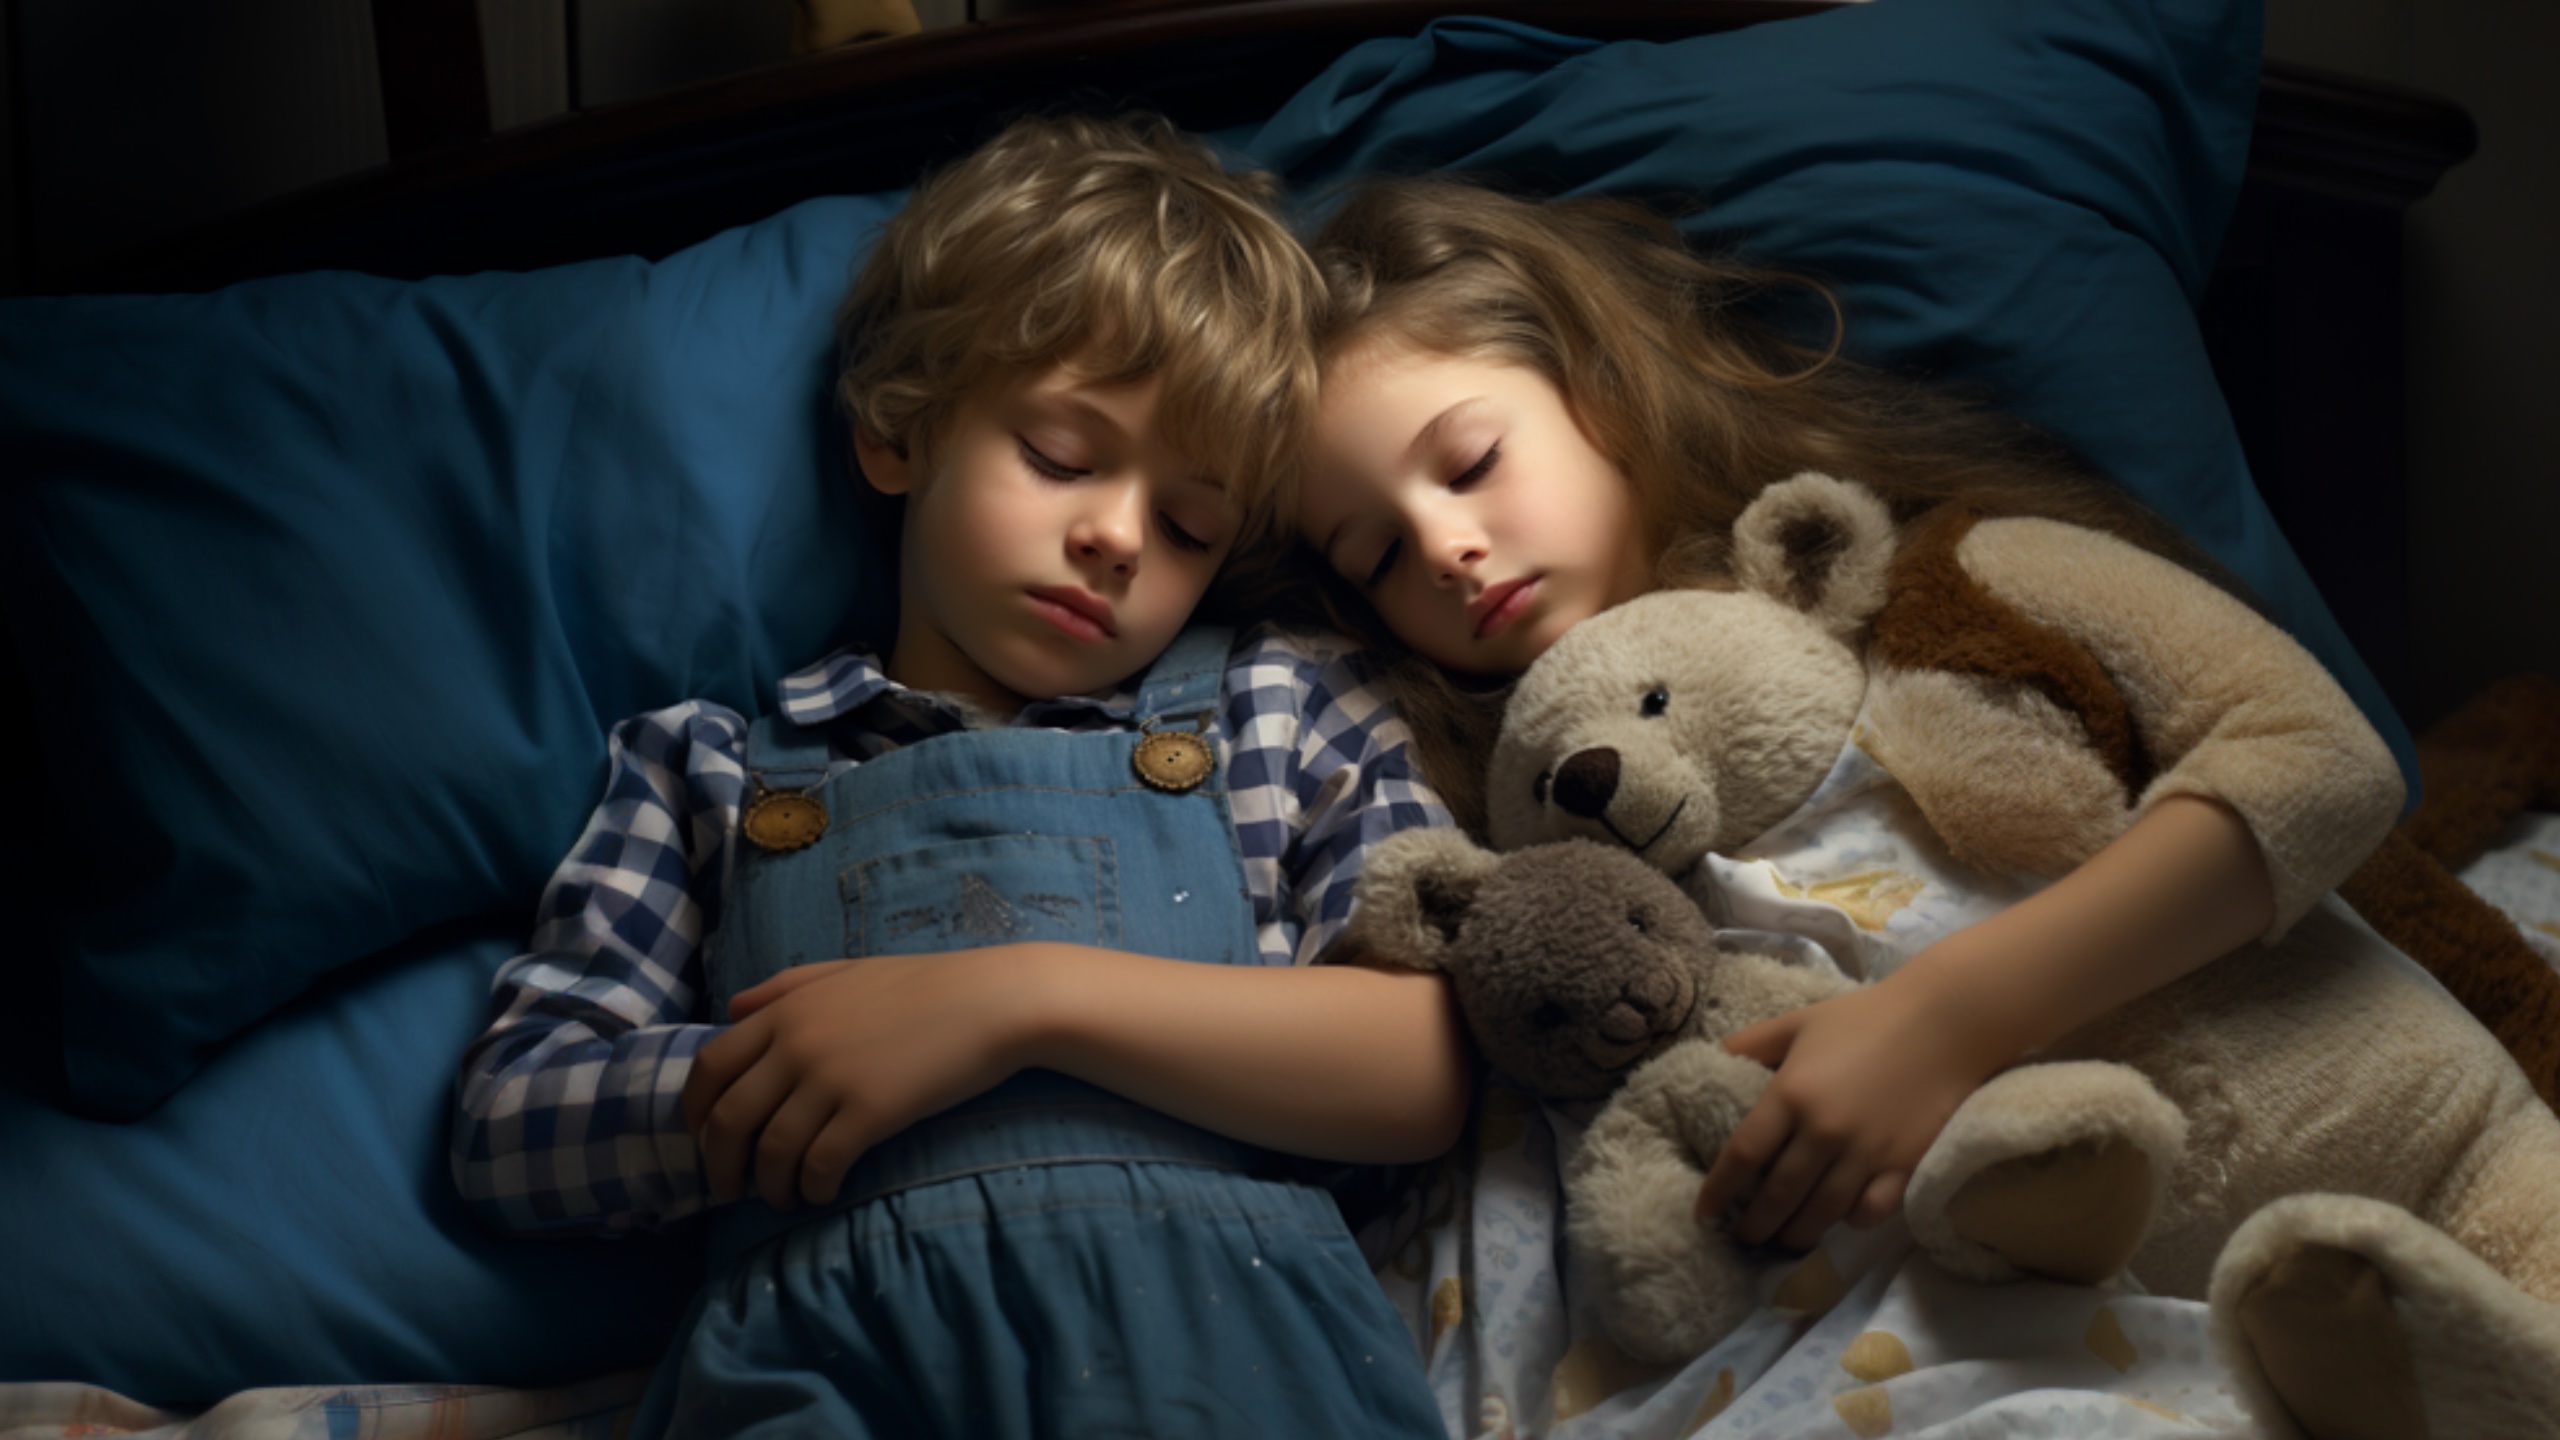 Rechtliche und ethische Bedenken werden geäußert, da generative KI Kinder ins Bett wiegt